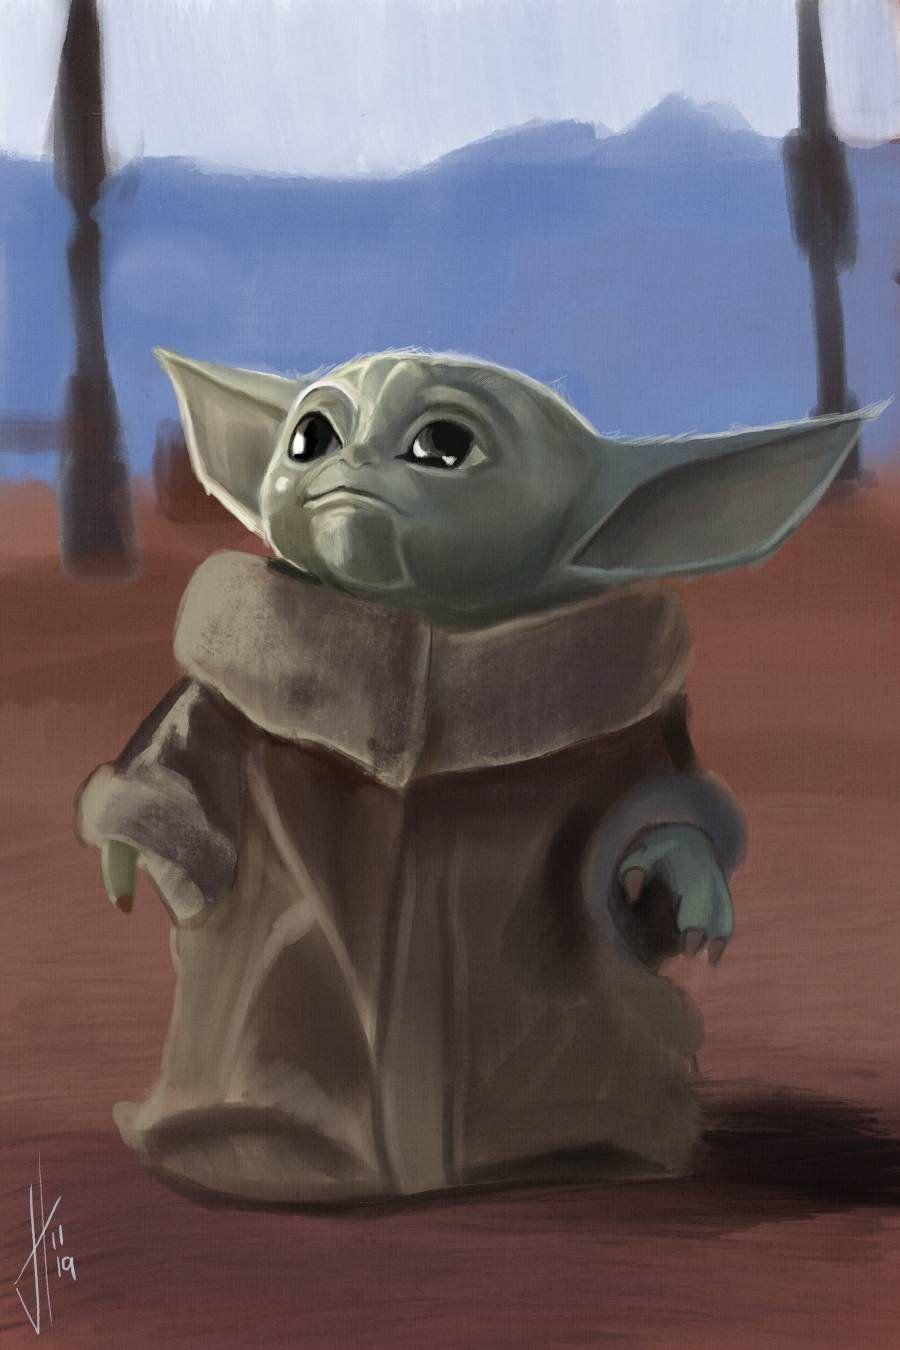 Star Wars. Star wars fan art, Yoda